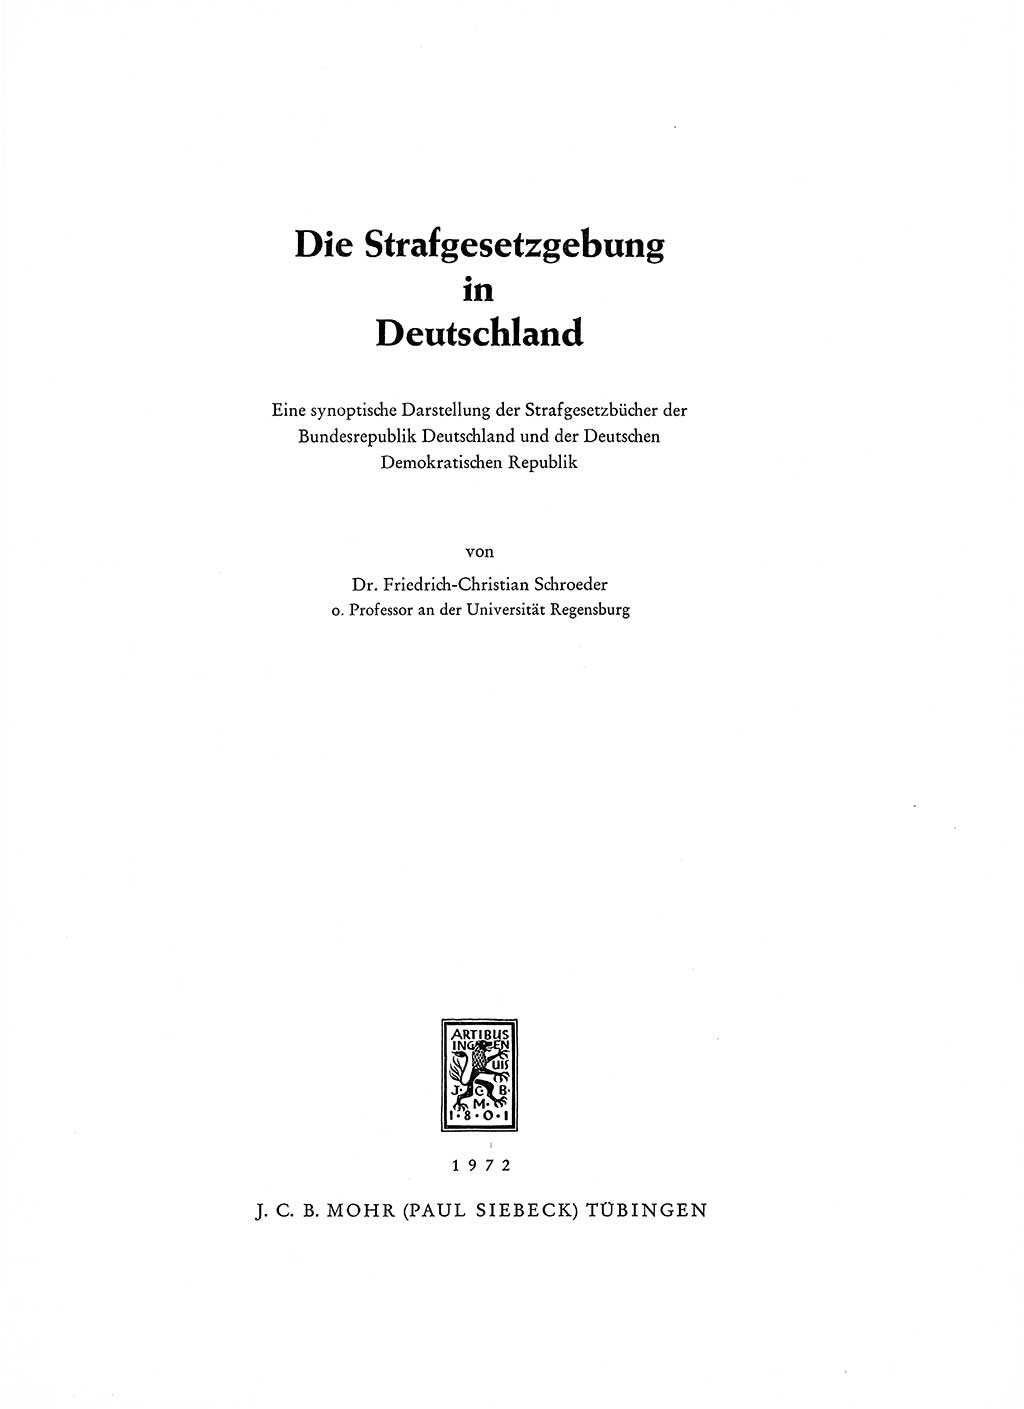 Strafgesetzgebung in Deutschland [Bundesrepublik Deutschland (BRD) und Deutsche Demokratische Republik (DDR)] 1972, Seite 3 (Str.-Ges. Dtl. StGB BRD DDR 1972, S. 3)